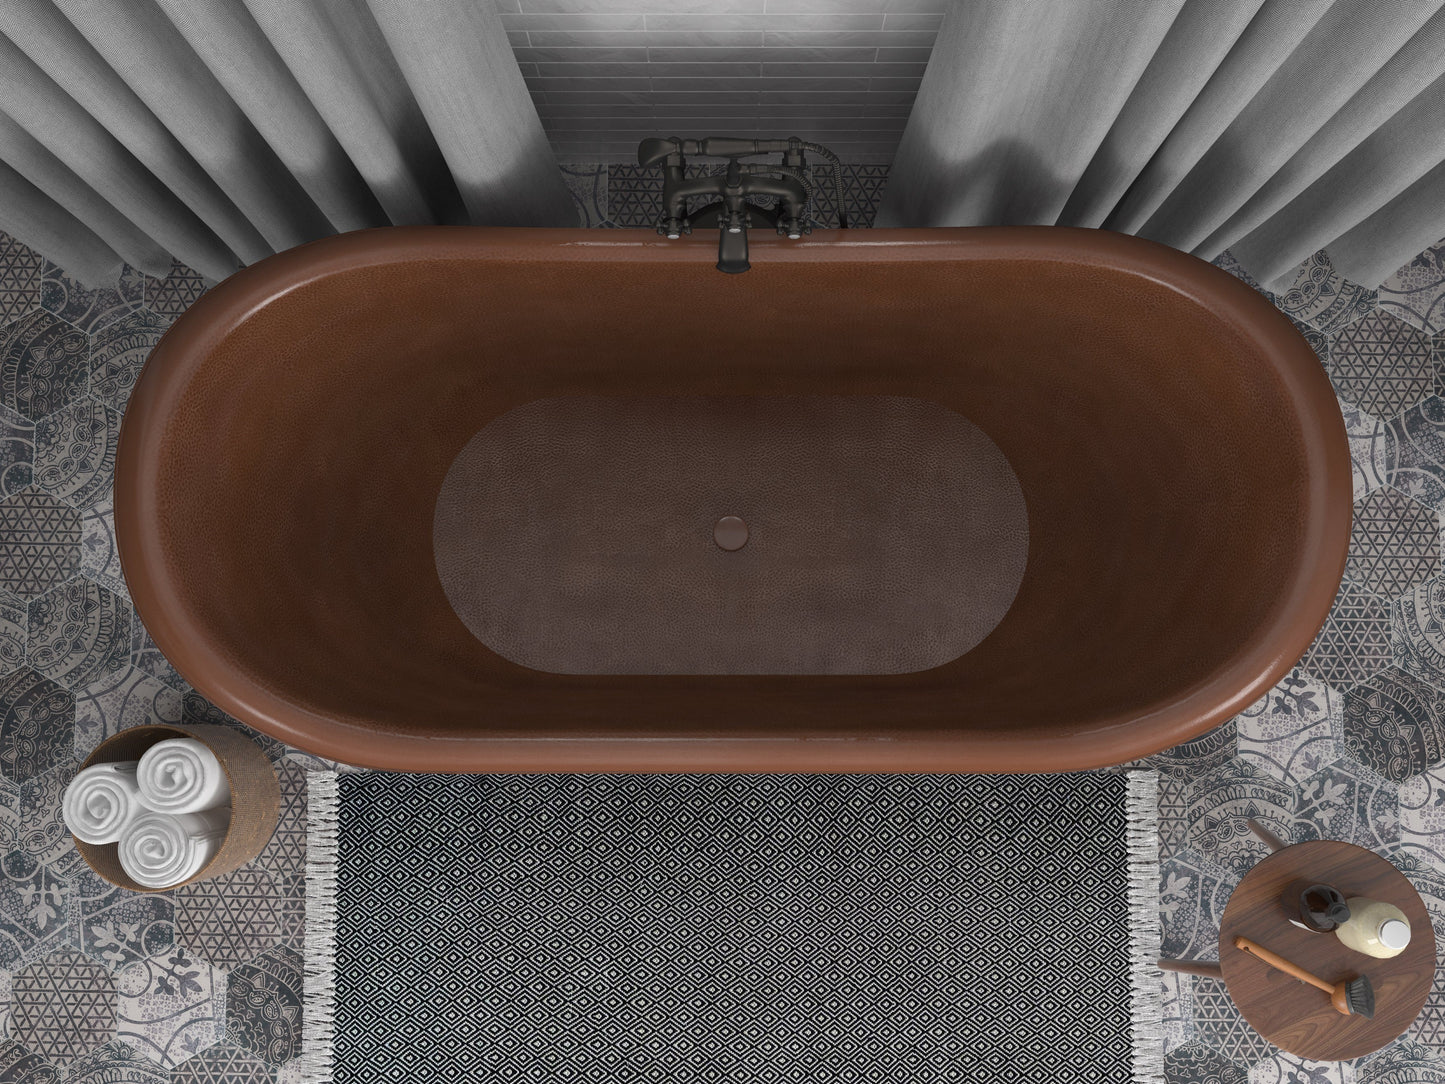 Iida 66 in. Handmade Copper Double Slipper Clawfoot Non-Whirlpool Bathtub in Hammered Antique Copper - Luxe Bathroom Vanities Luxury Bathroom Fixtures Bathroom Furniture